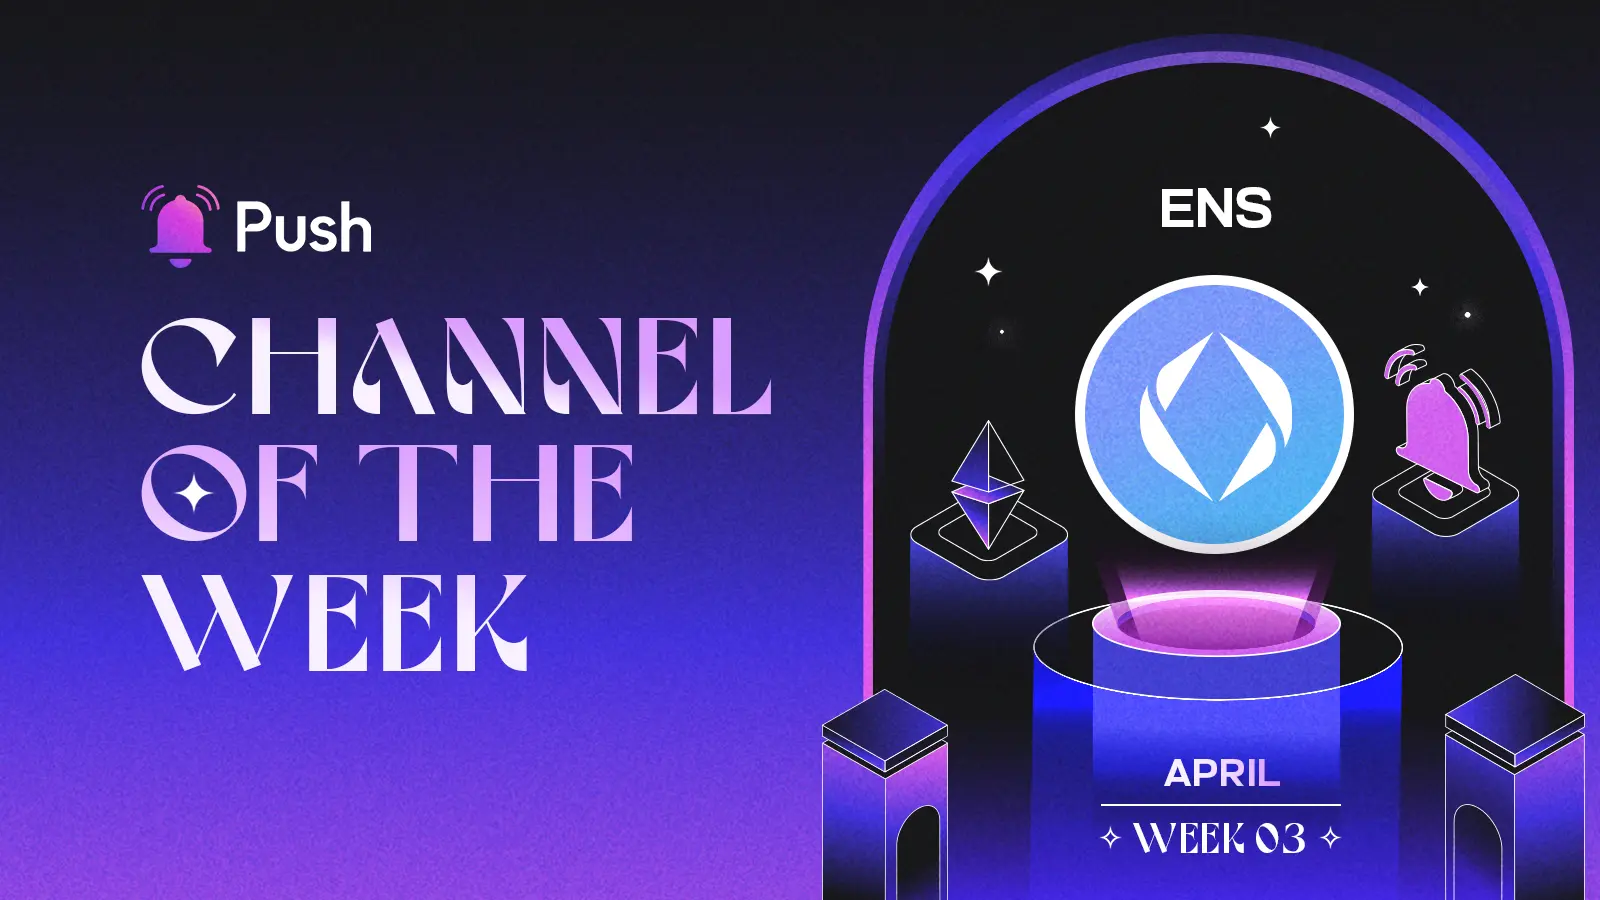 Banner celebrating ENS as April - week 3 channel of week